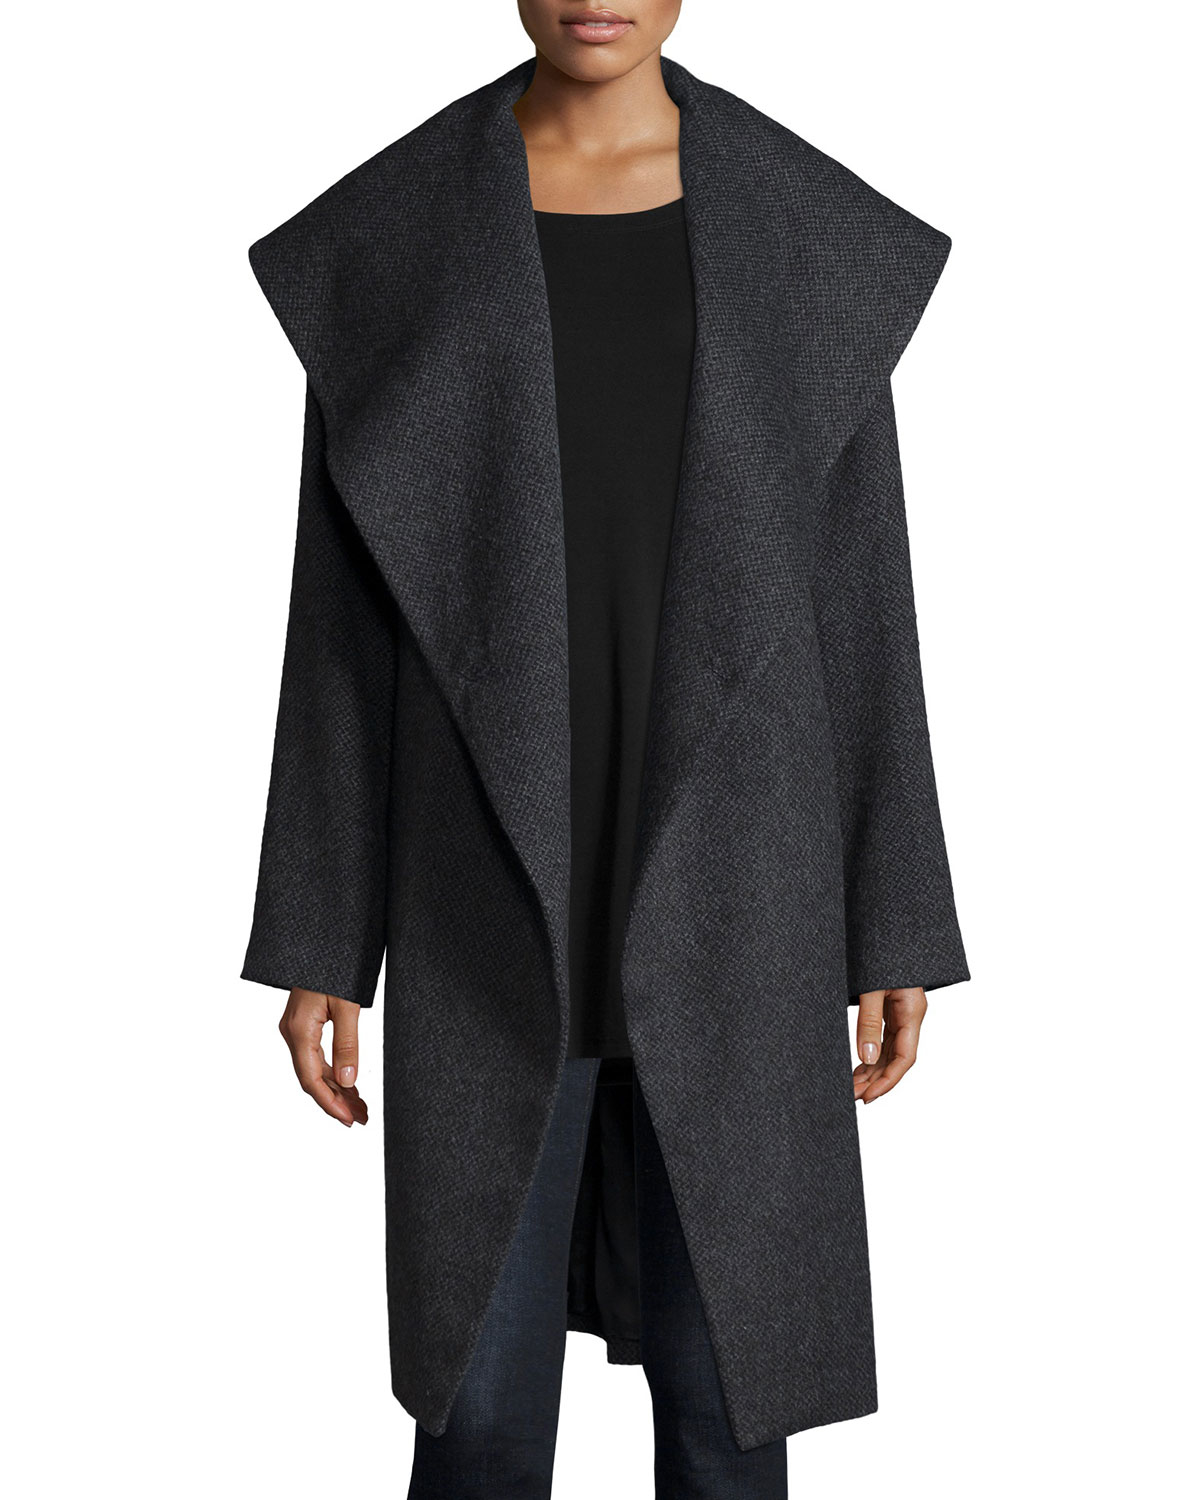 Eileen Fisher Fisher Project Alpaca Tweed Coat in Gray - Lyst